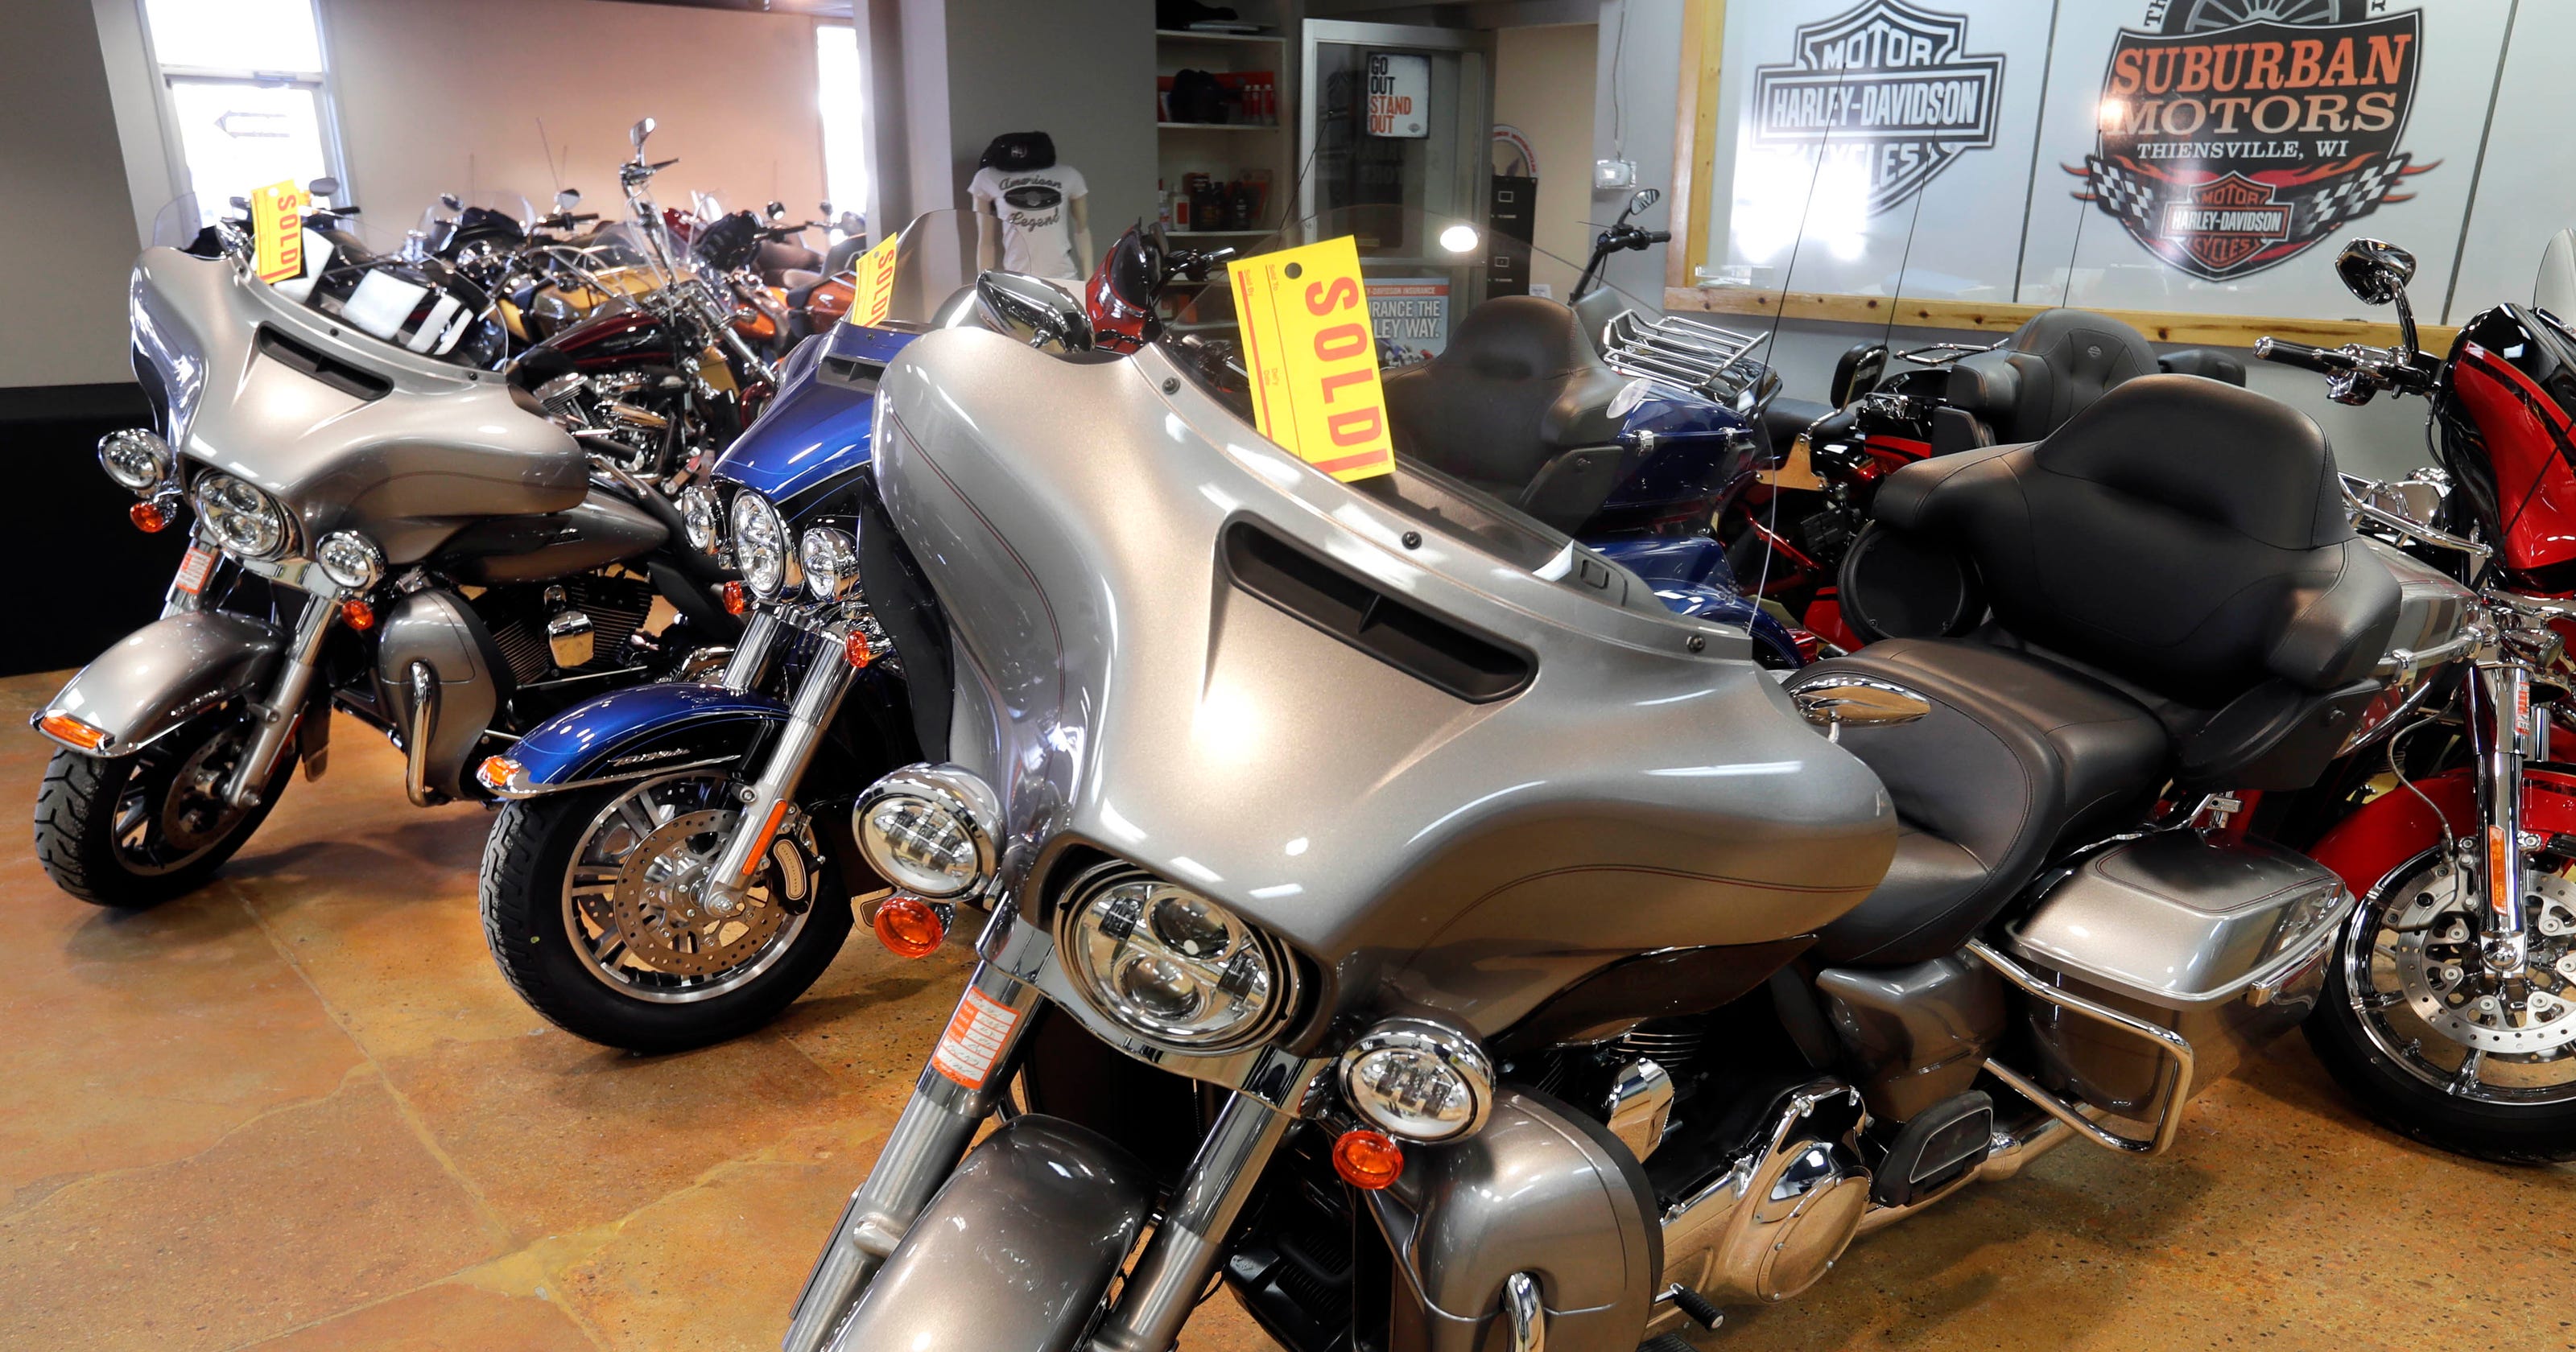 Harley Davidson To Close Kansas City Plant As Motorcycle Sales Fall